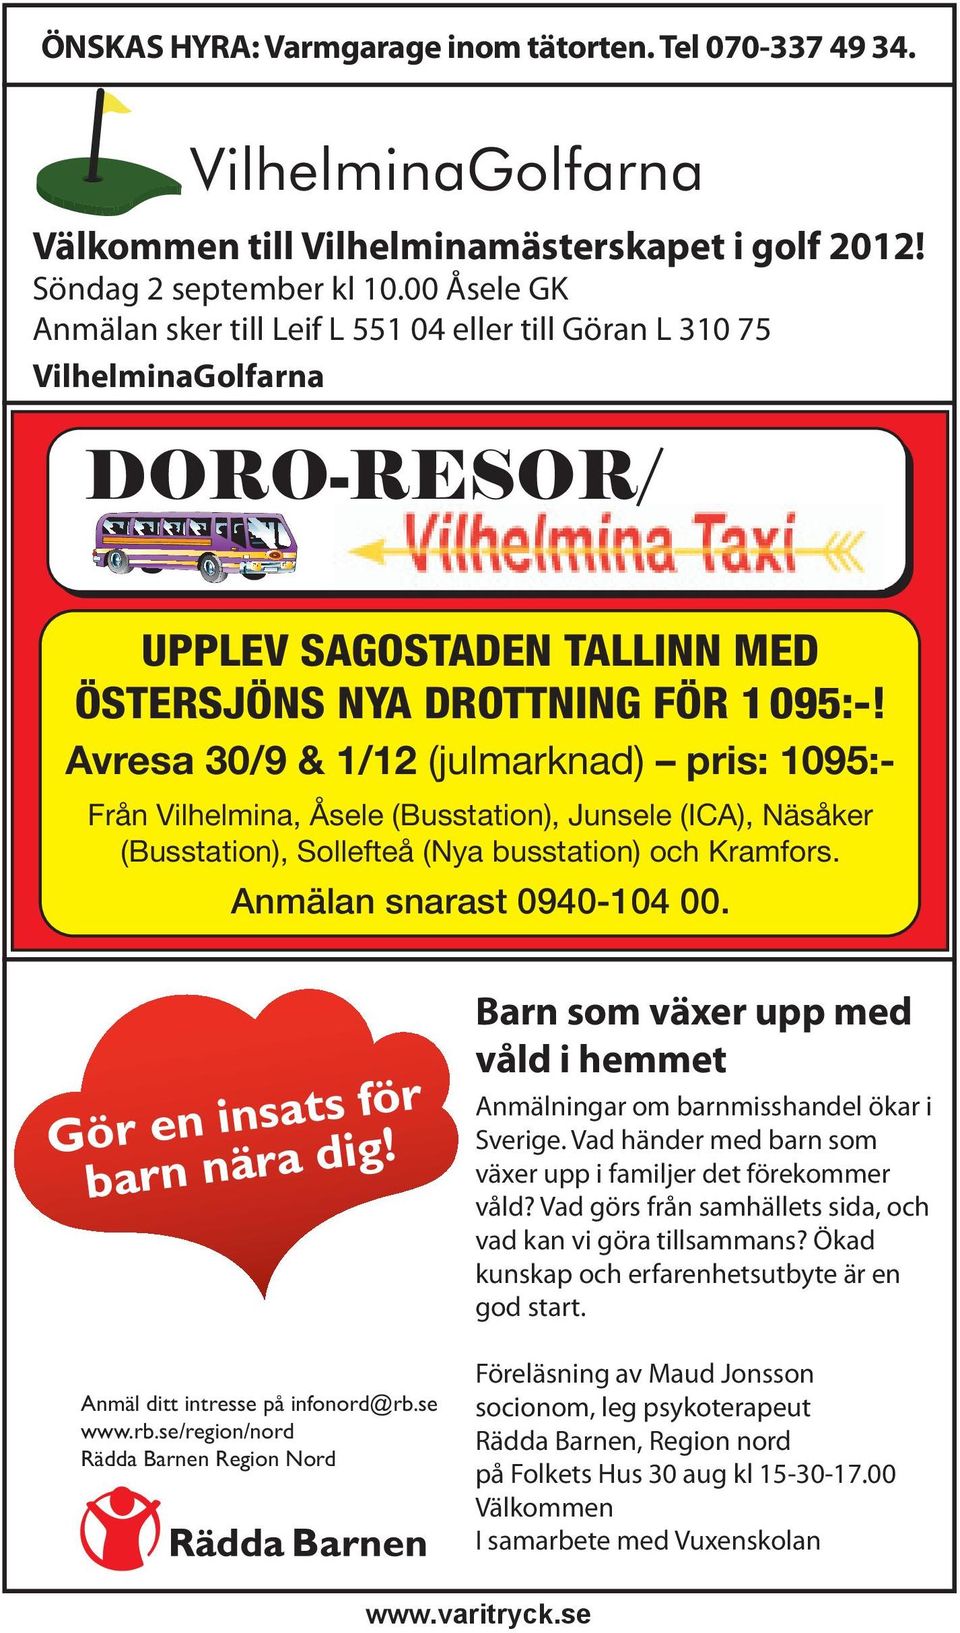 Avresa 30/9 & 1/12 (julmarknad) pris: 1095:- Från Vilhelmina, Åsele (Busstation), Junsele (ICA), Näsåker (Busstation), Sollefteå (Nya busstation) och Kramfors. Anmälan snarast 0940-104 00.